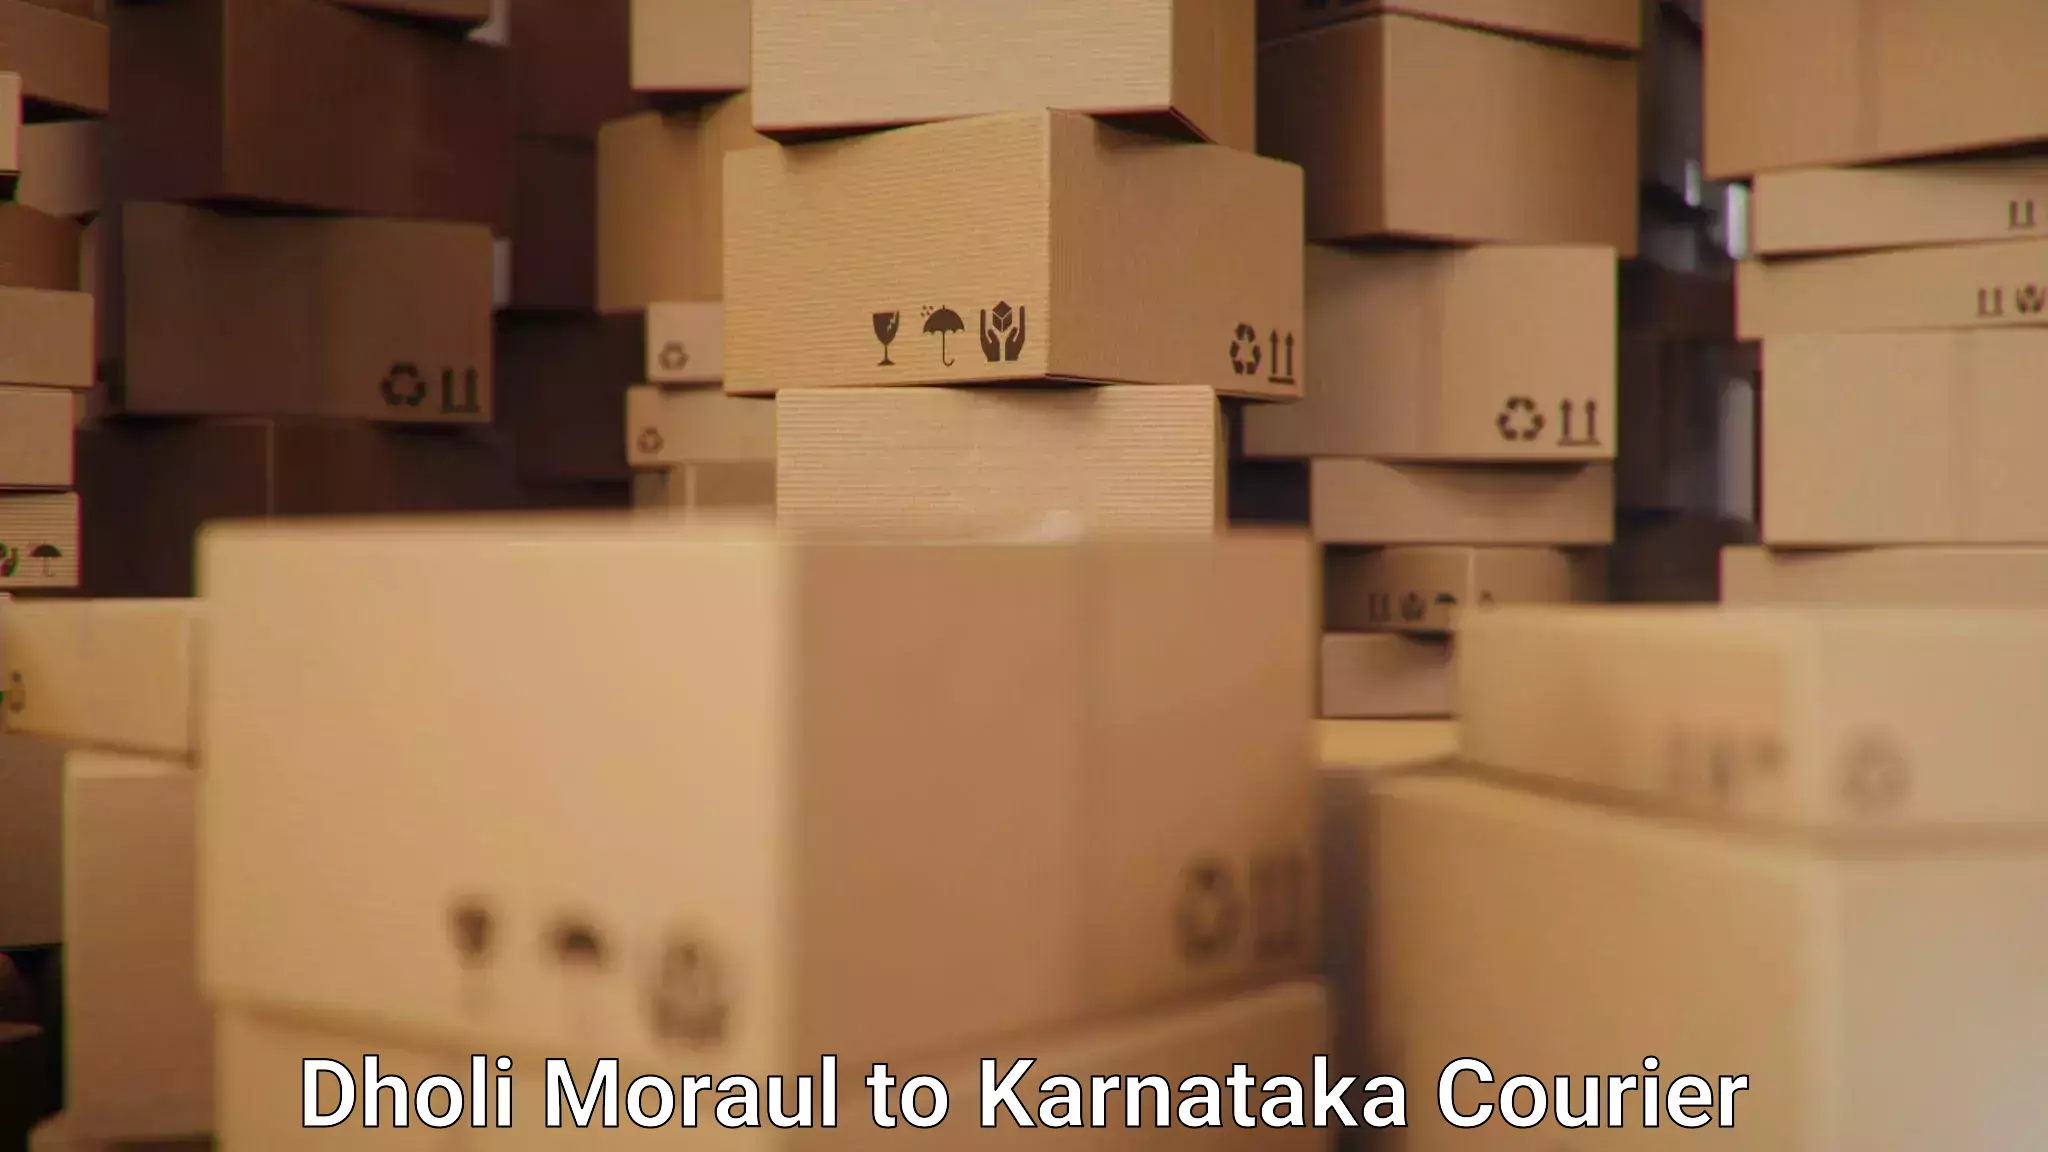 Affordable parcel service Dholi Moraul to Kittur